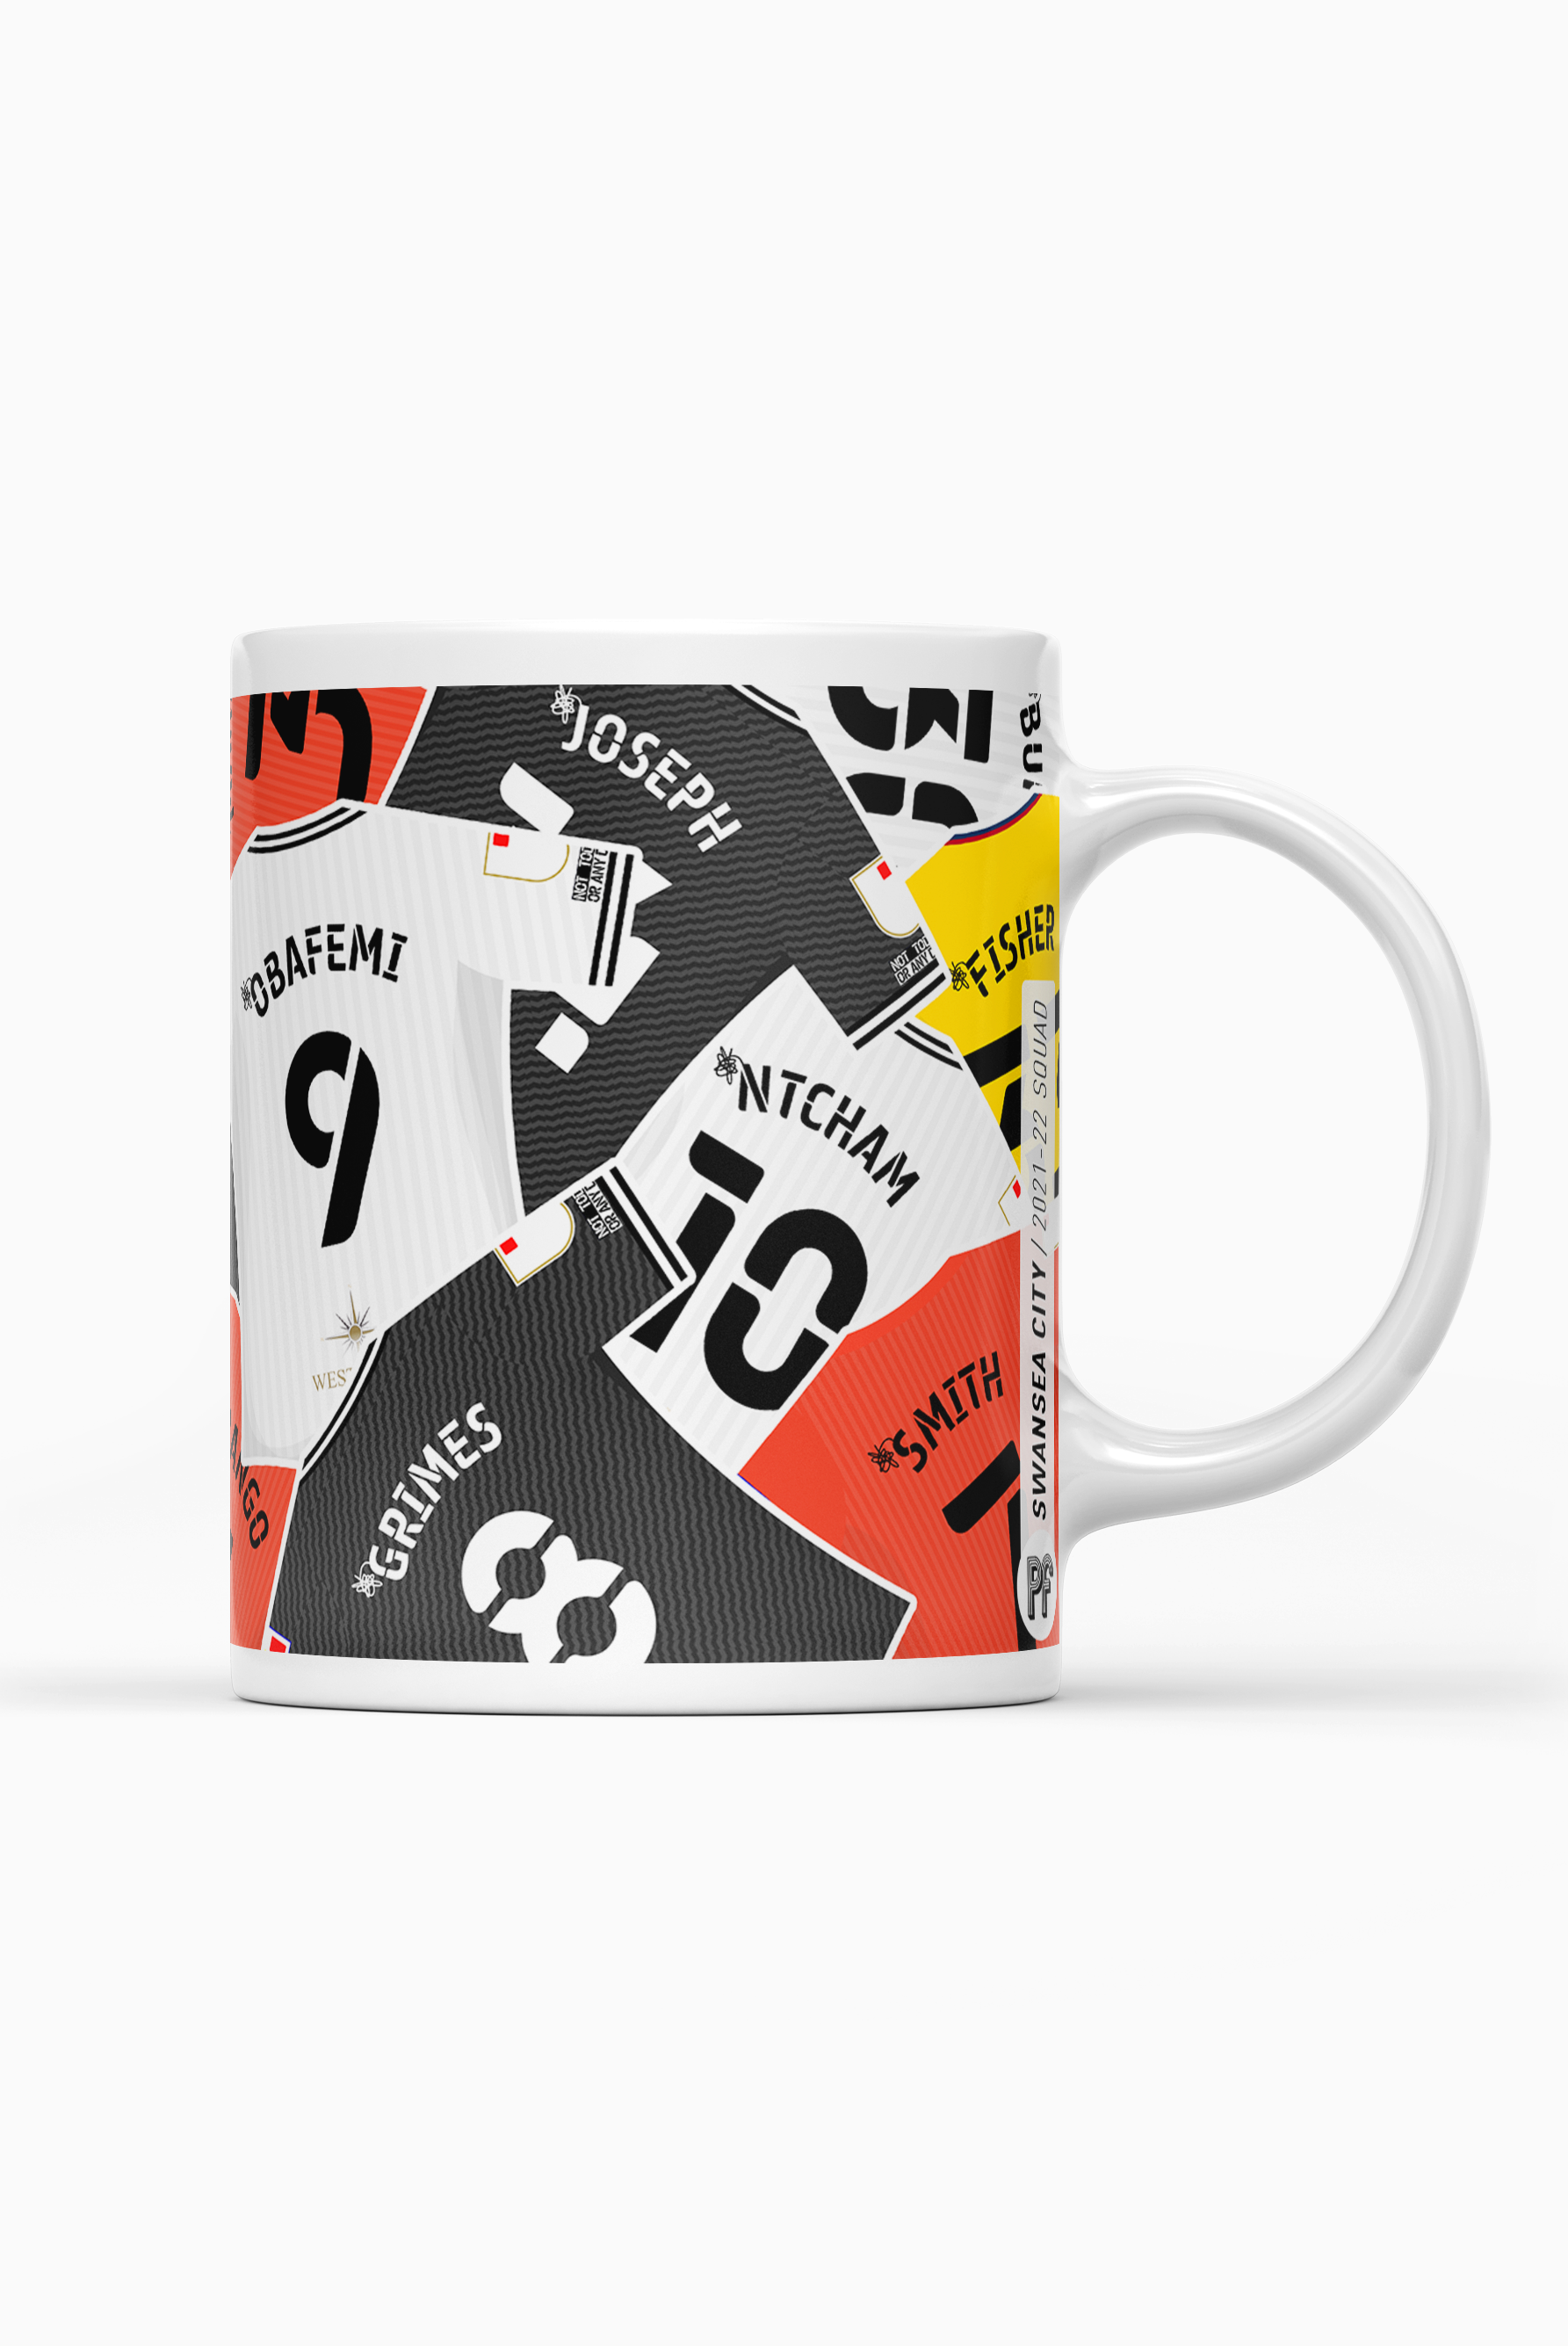 Swansea / 2021-22 Squad Mug